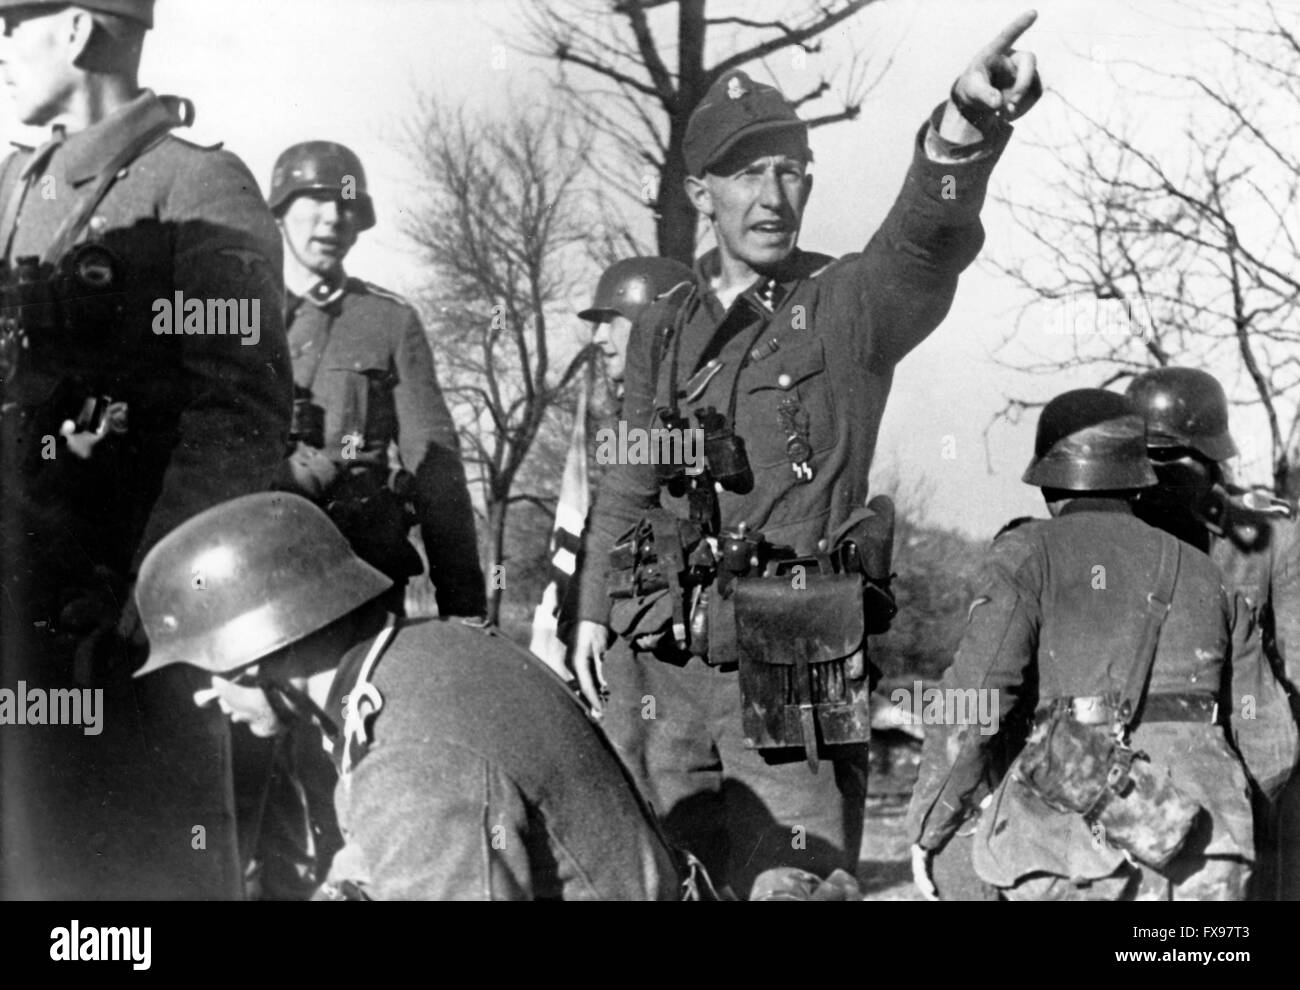 Le tableau de la propagande nazie montre des membres du Waffen-SS pendant le combat partisan en Yougoslavie en juin 1943. Fotoarchiv für Zeitgeschichtee NO SERVICE DE FIL - Banque D'Images